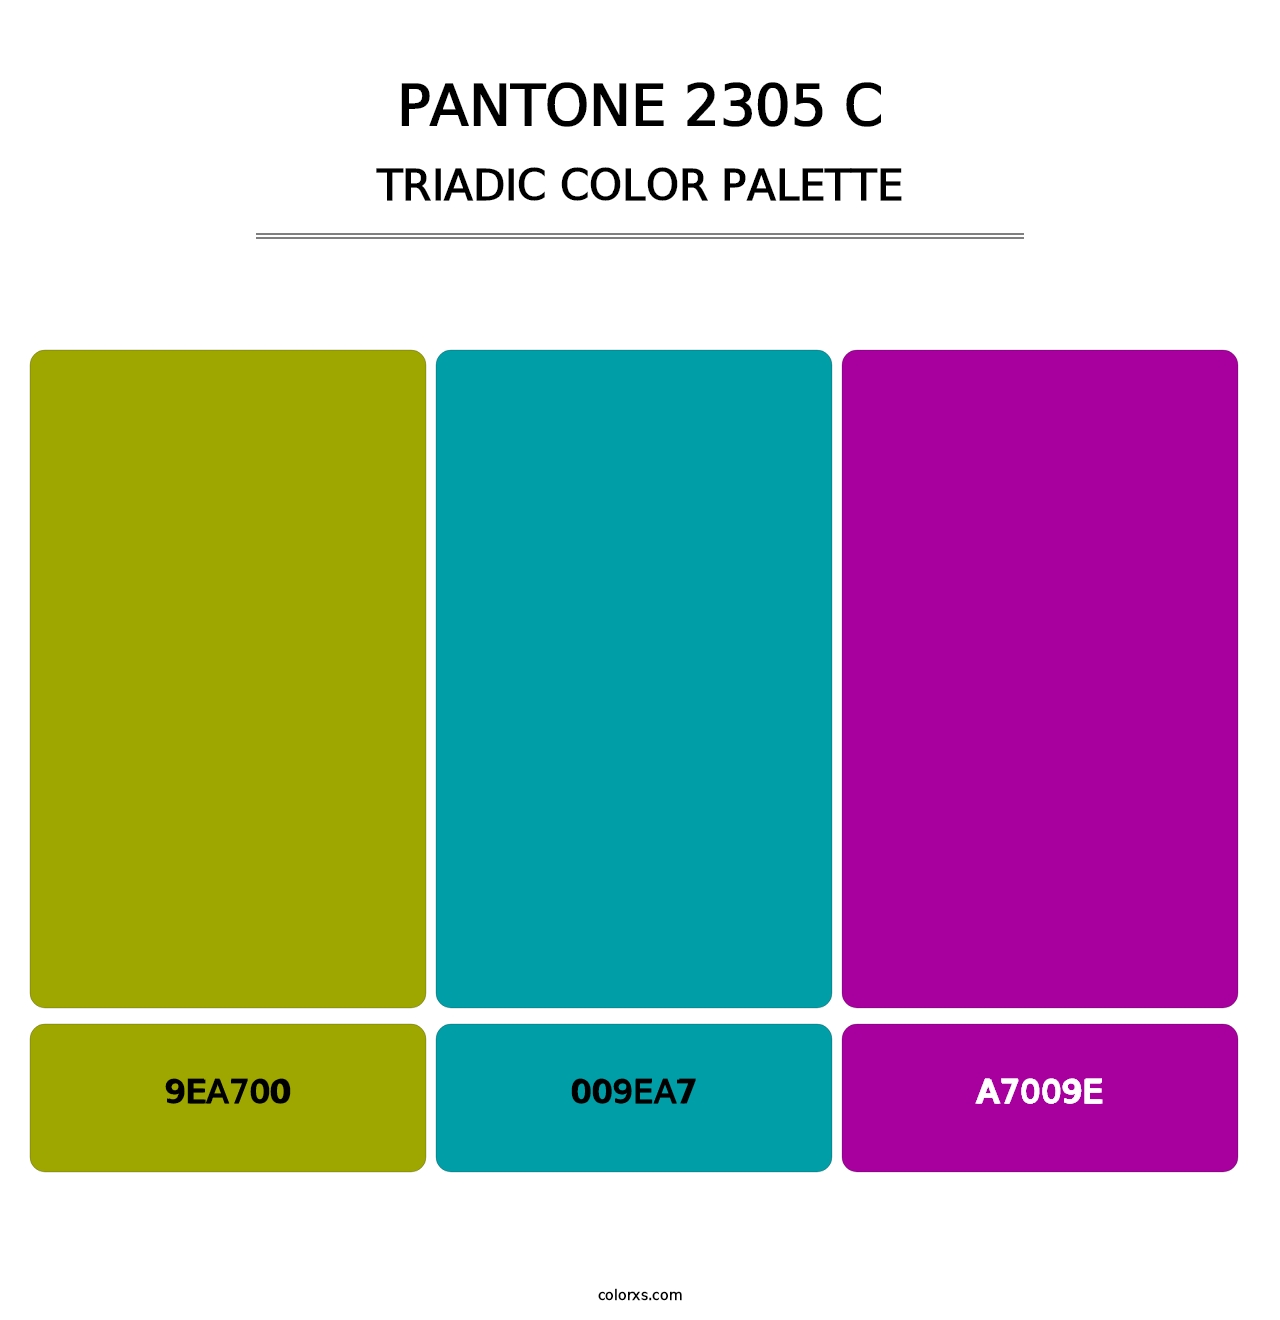 PANTONE 2305 C - Triadic Color Palette